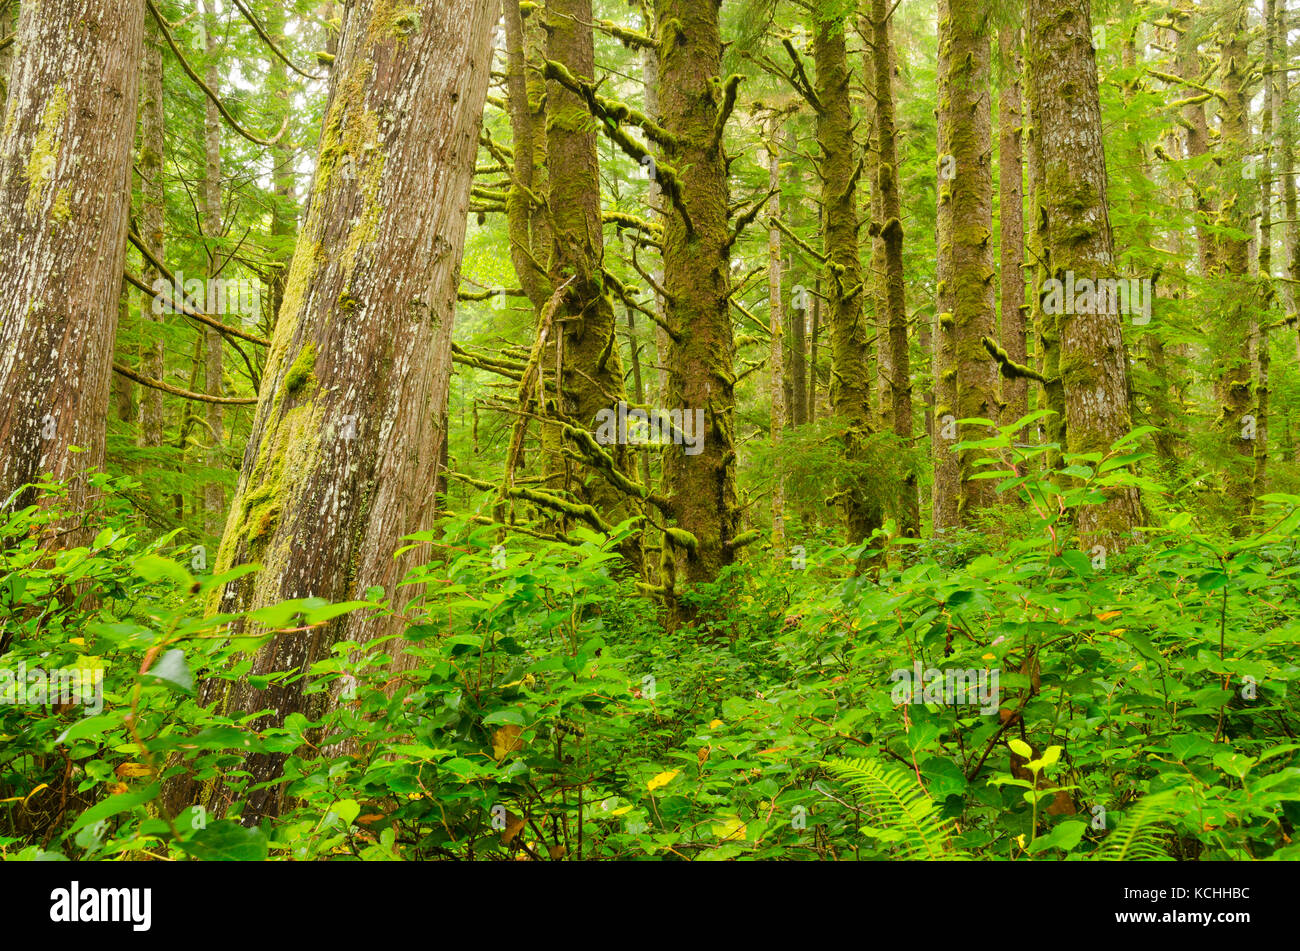 Una arboleda de la picea de Sitka (Picea sitchensis) y El Cedro Rojo del Oeste (Thuja plicata) en la costa oeste de la isla de Vancouver, BC Foto de stock